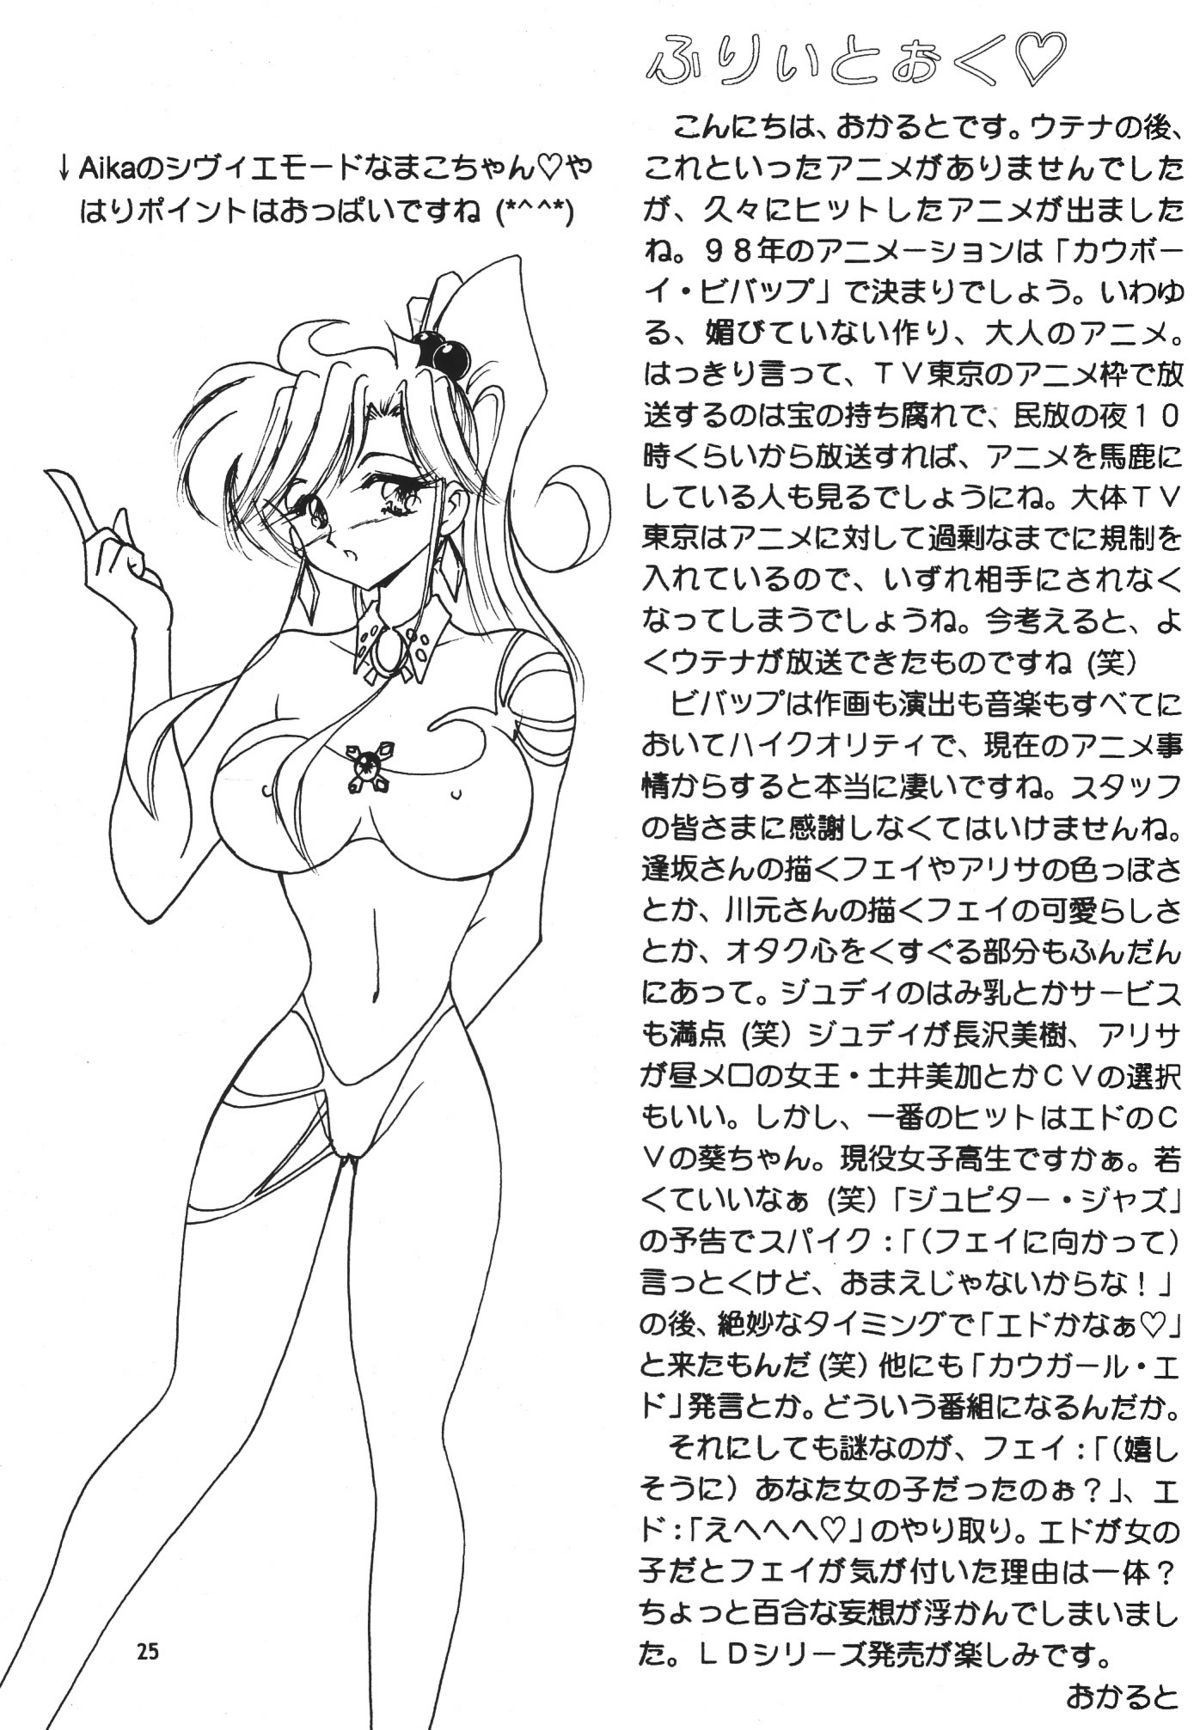 [Seishun No Nigirikobushi!] Favorite Visions 2 (Sailor Moon, AIKa) page 27 full